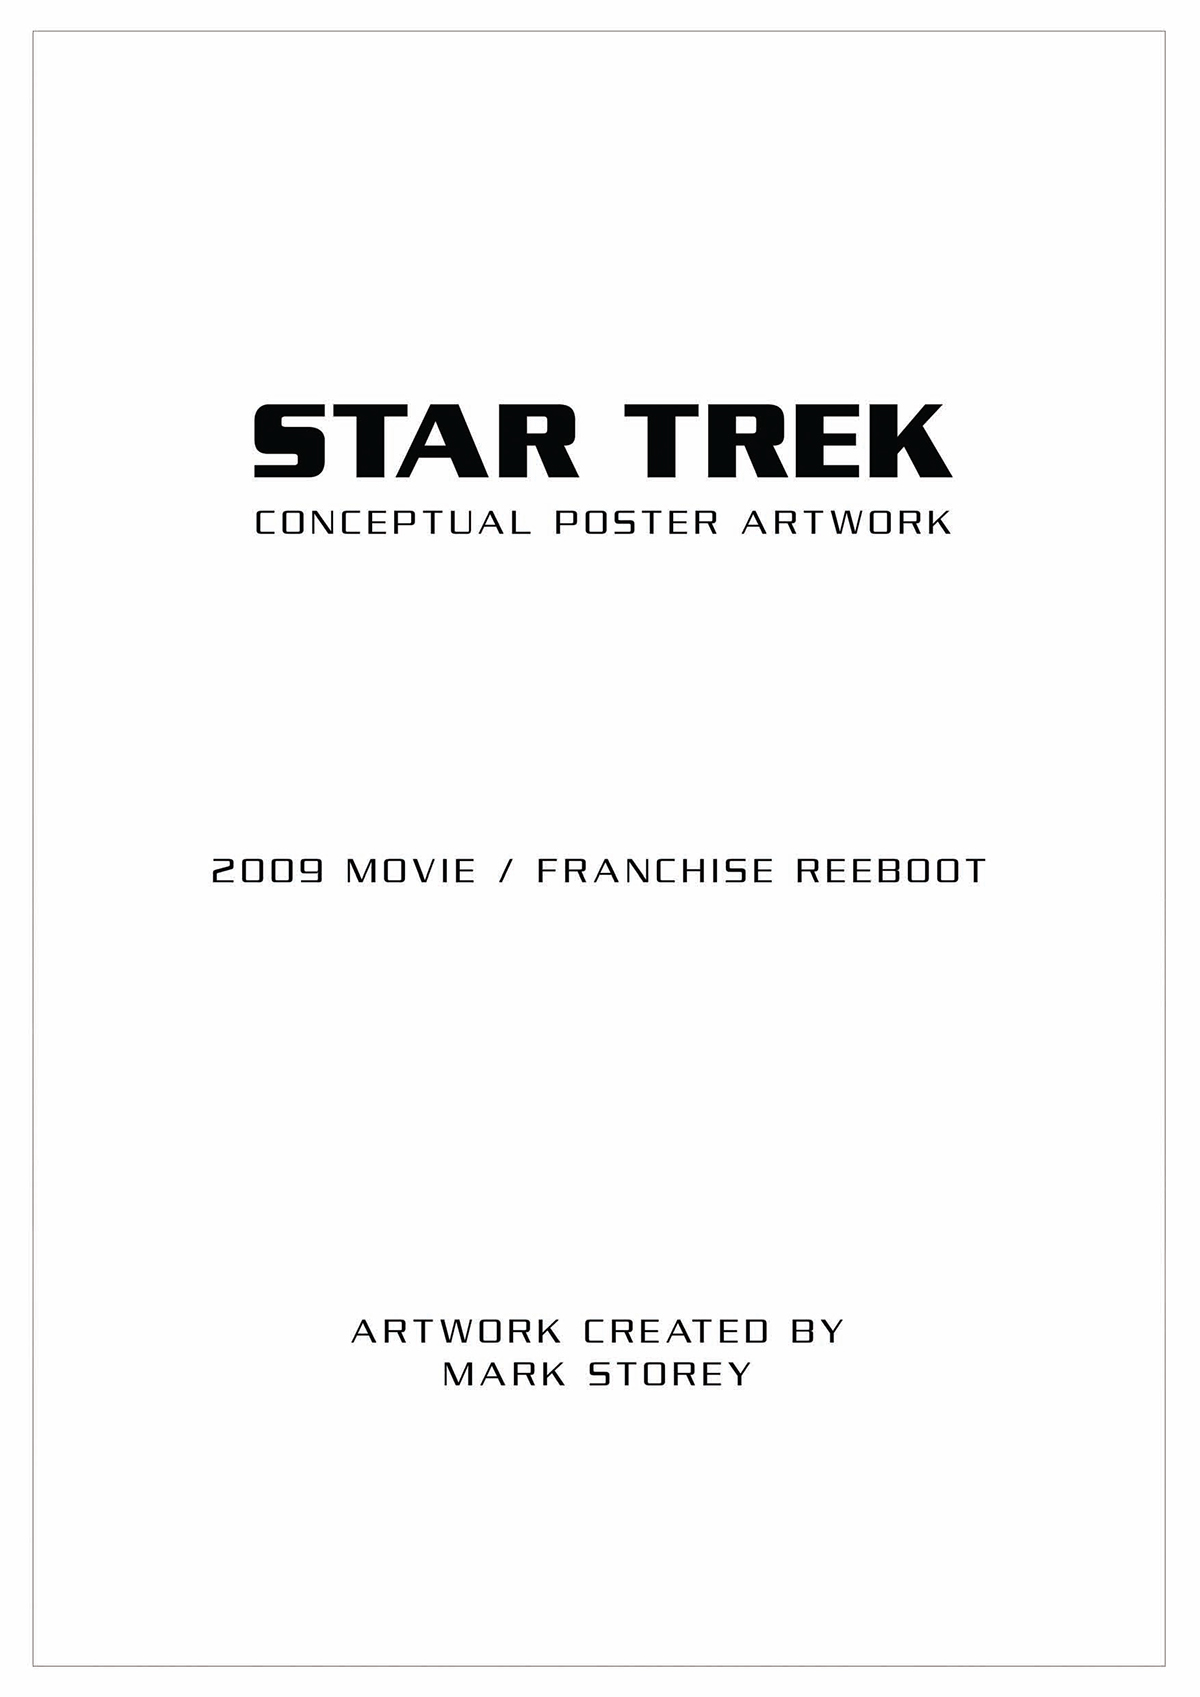 Star Trek movie poster artwork USS Enterprise  Star Trek Discovery Captain Kirk JJ Abrams spock starship Enterprise